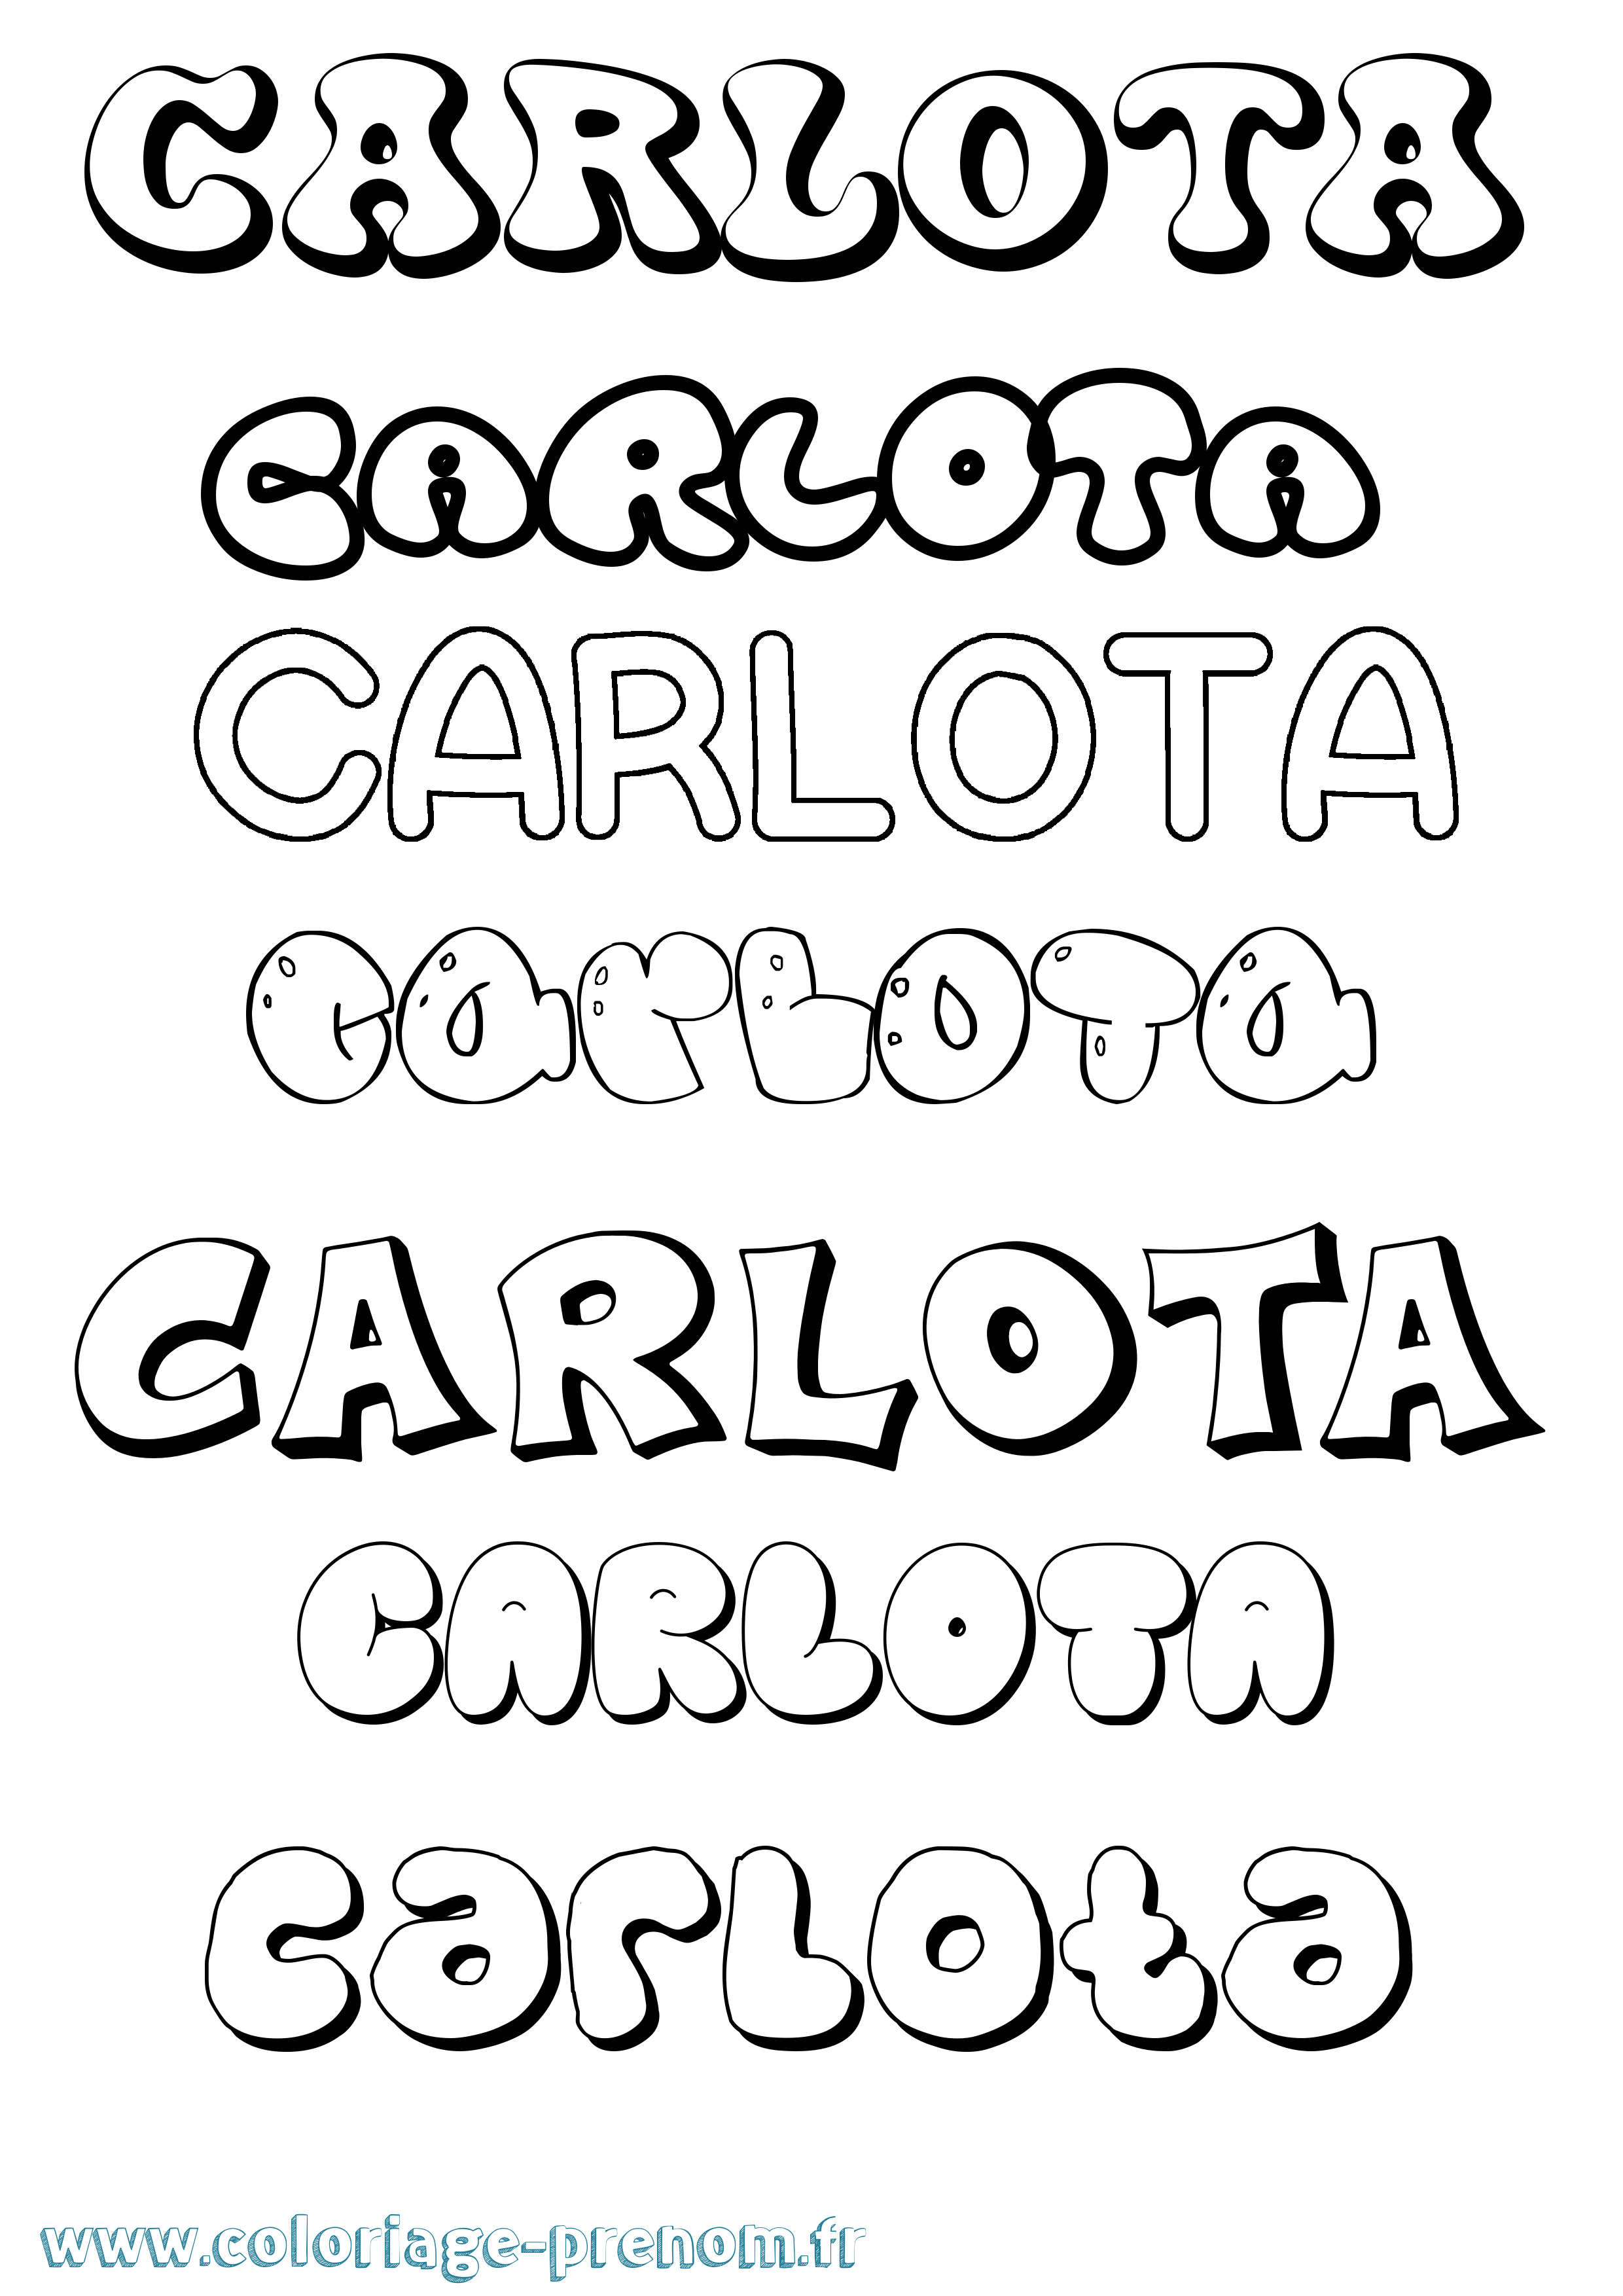 Coloriage prénom Carlota Bubble